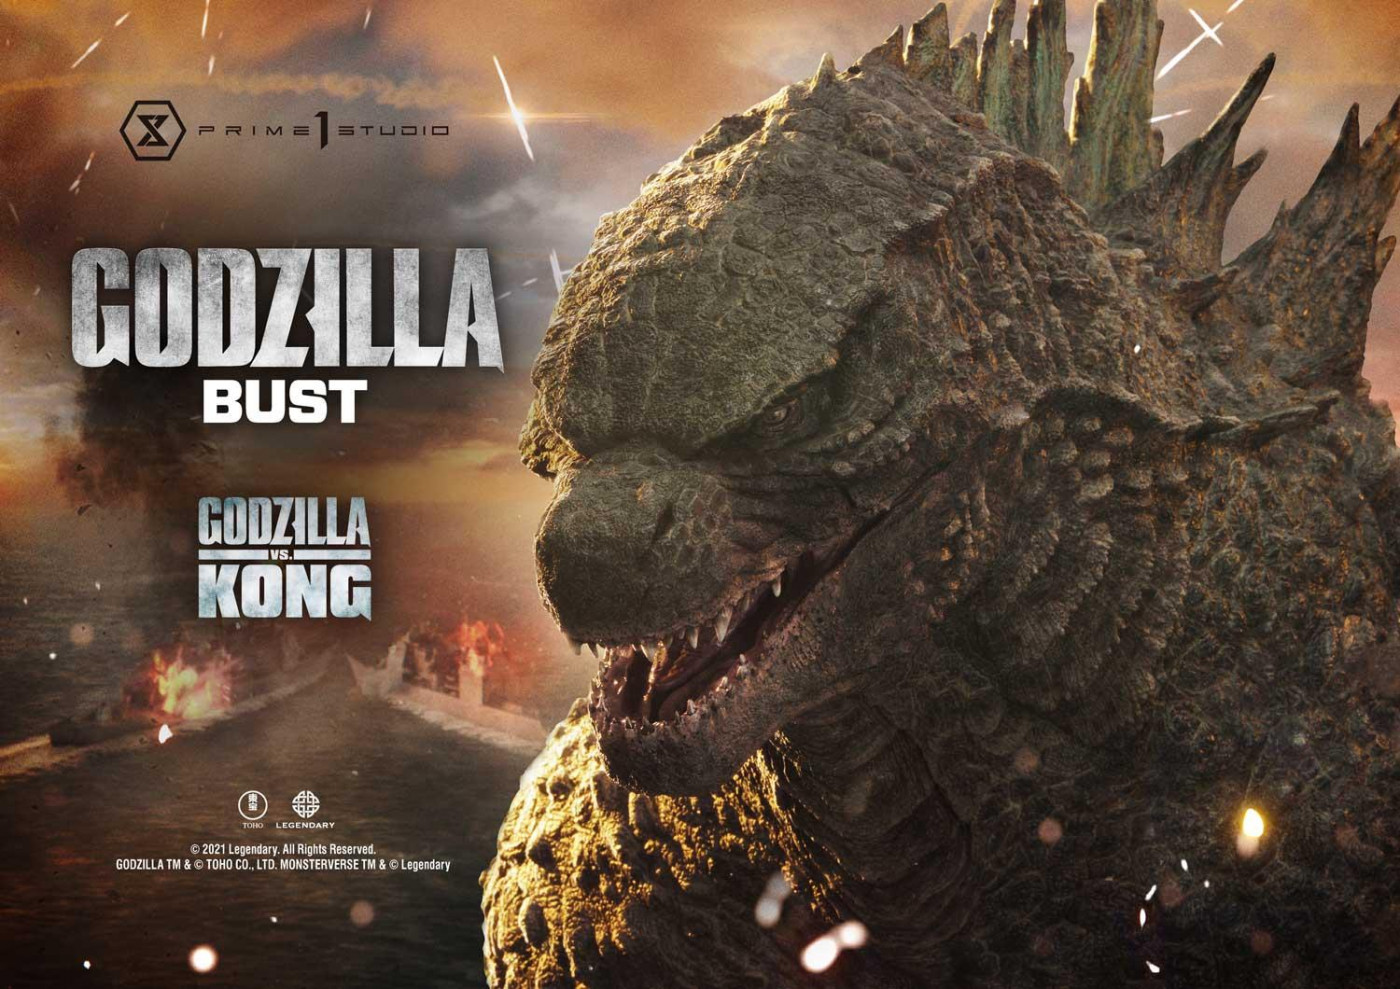 Life Size Godzilla vs Kong Godzilla Bust Bonus Version